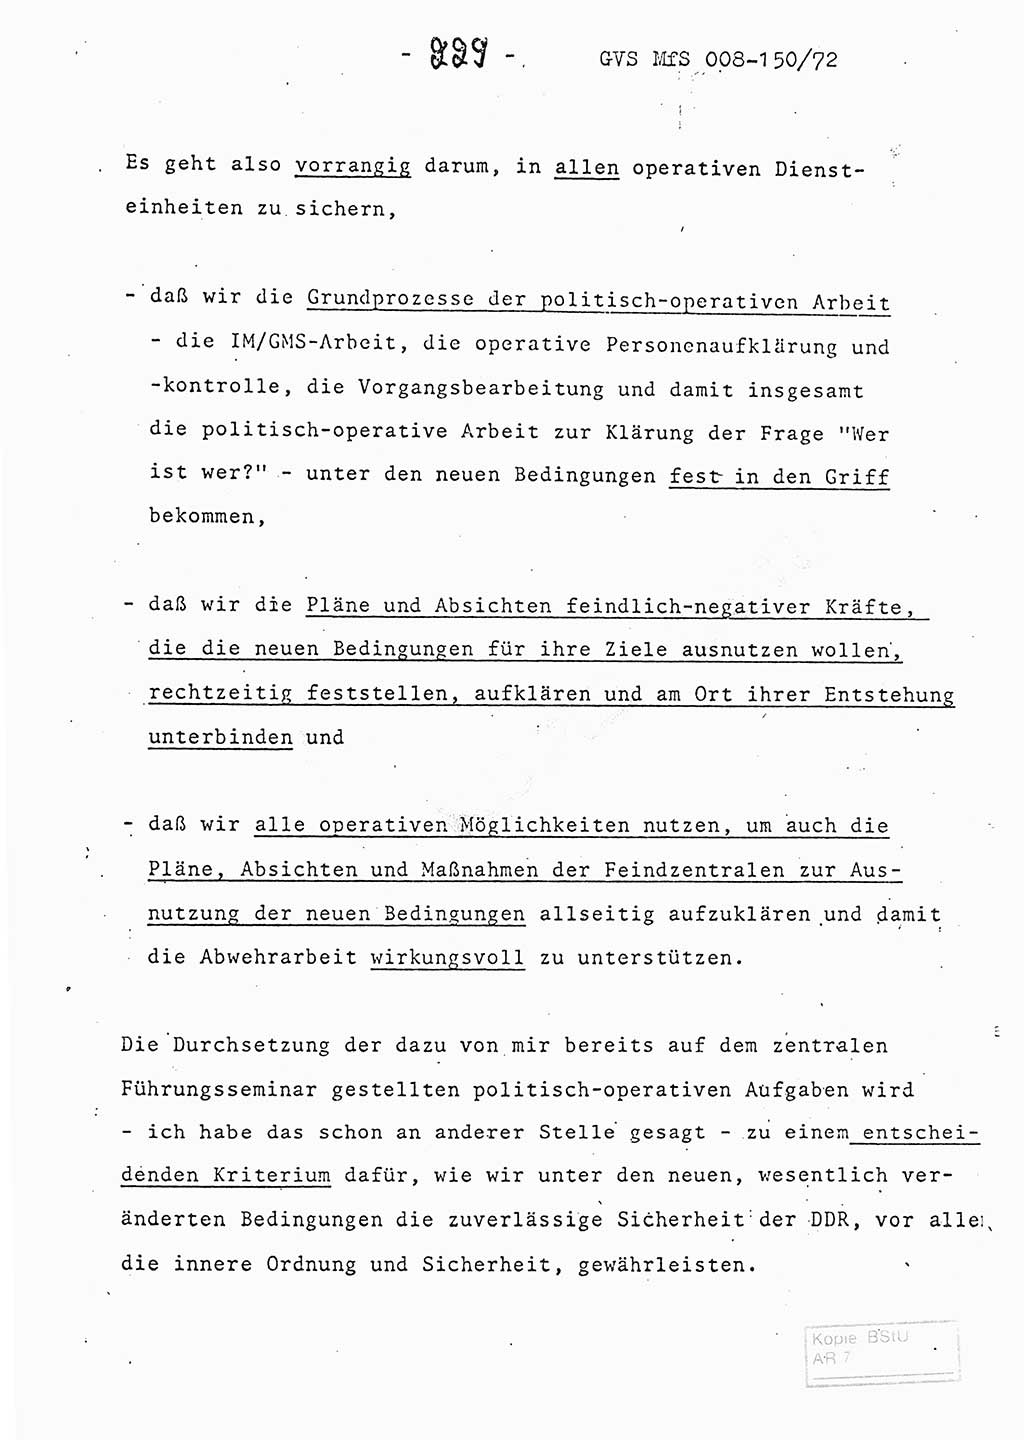 Referat (Entwurf) des Genossen Minister (Generaloberst Erich Mielke) auf der Dienstkonferenz 1972, Ministerium für Staatssicherheit (MfS) [Deutsche Demokratische Republik (DDR)], Der Minister, Geheime Verschlußsache (GVS) 008-150/72, Berlin 25.2.1972, Seite 229 (Ref. Entw. DK MfS DDR Min. GVS 008-150/72 1972, S. 229)